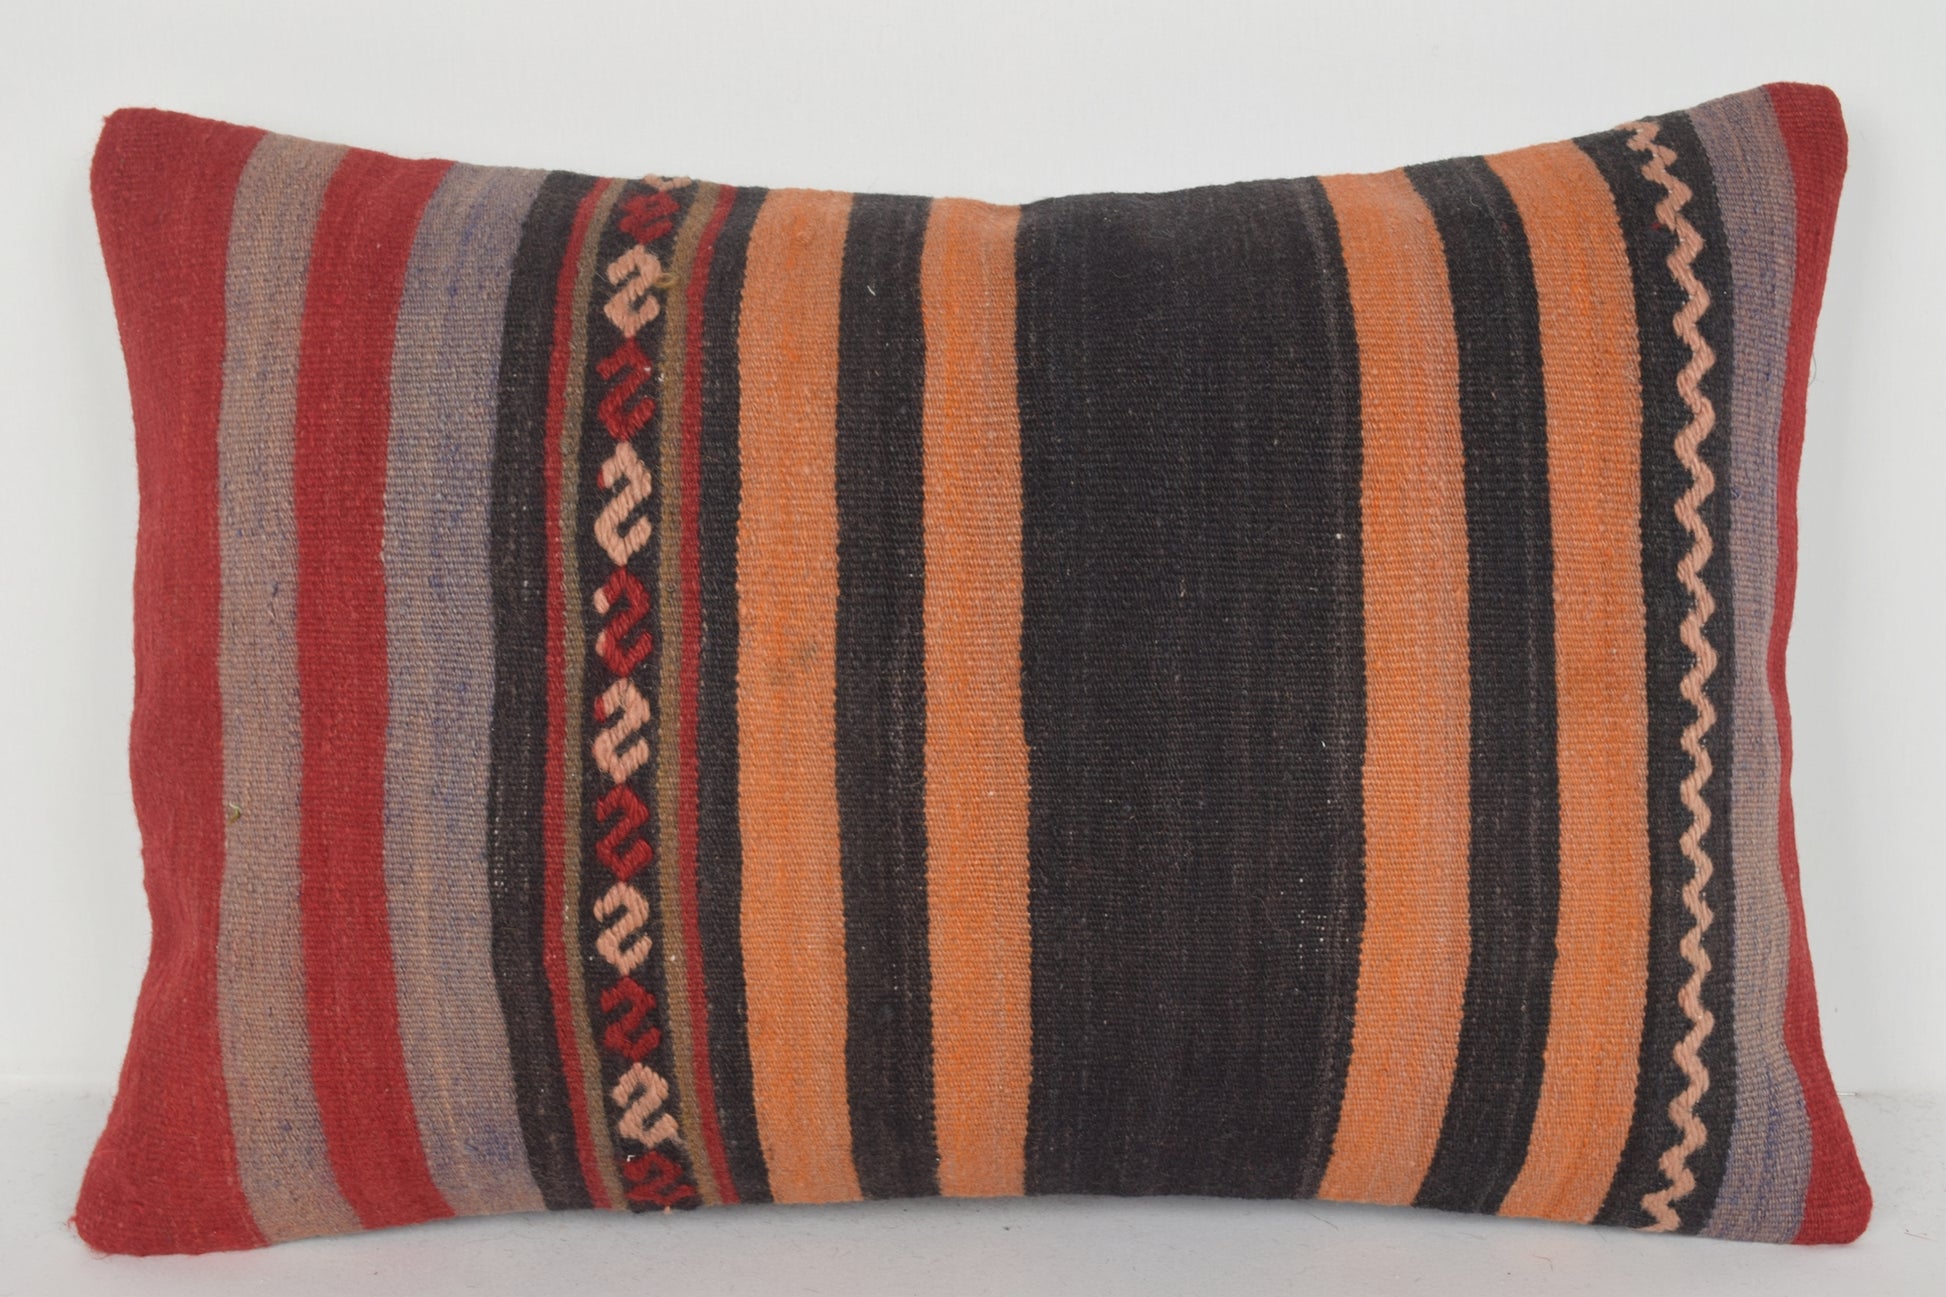 Kilim Cushions Auckland E00555 Lumbar Prehistoric Crochet Novelty